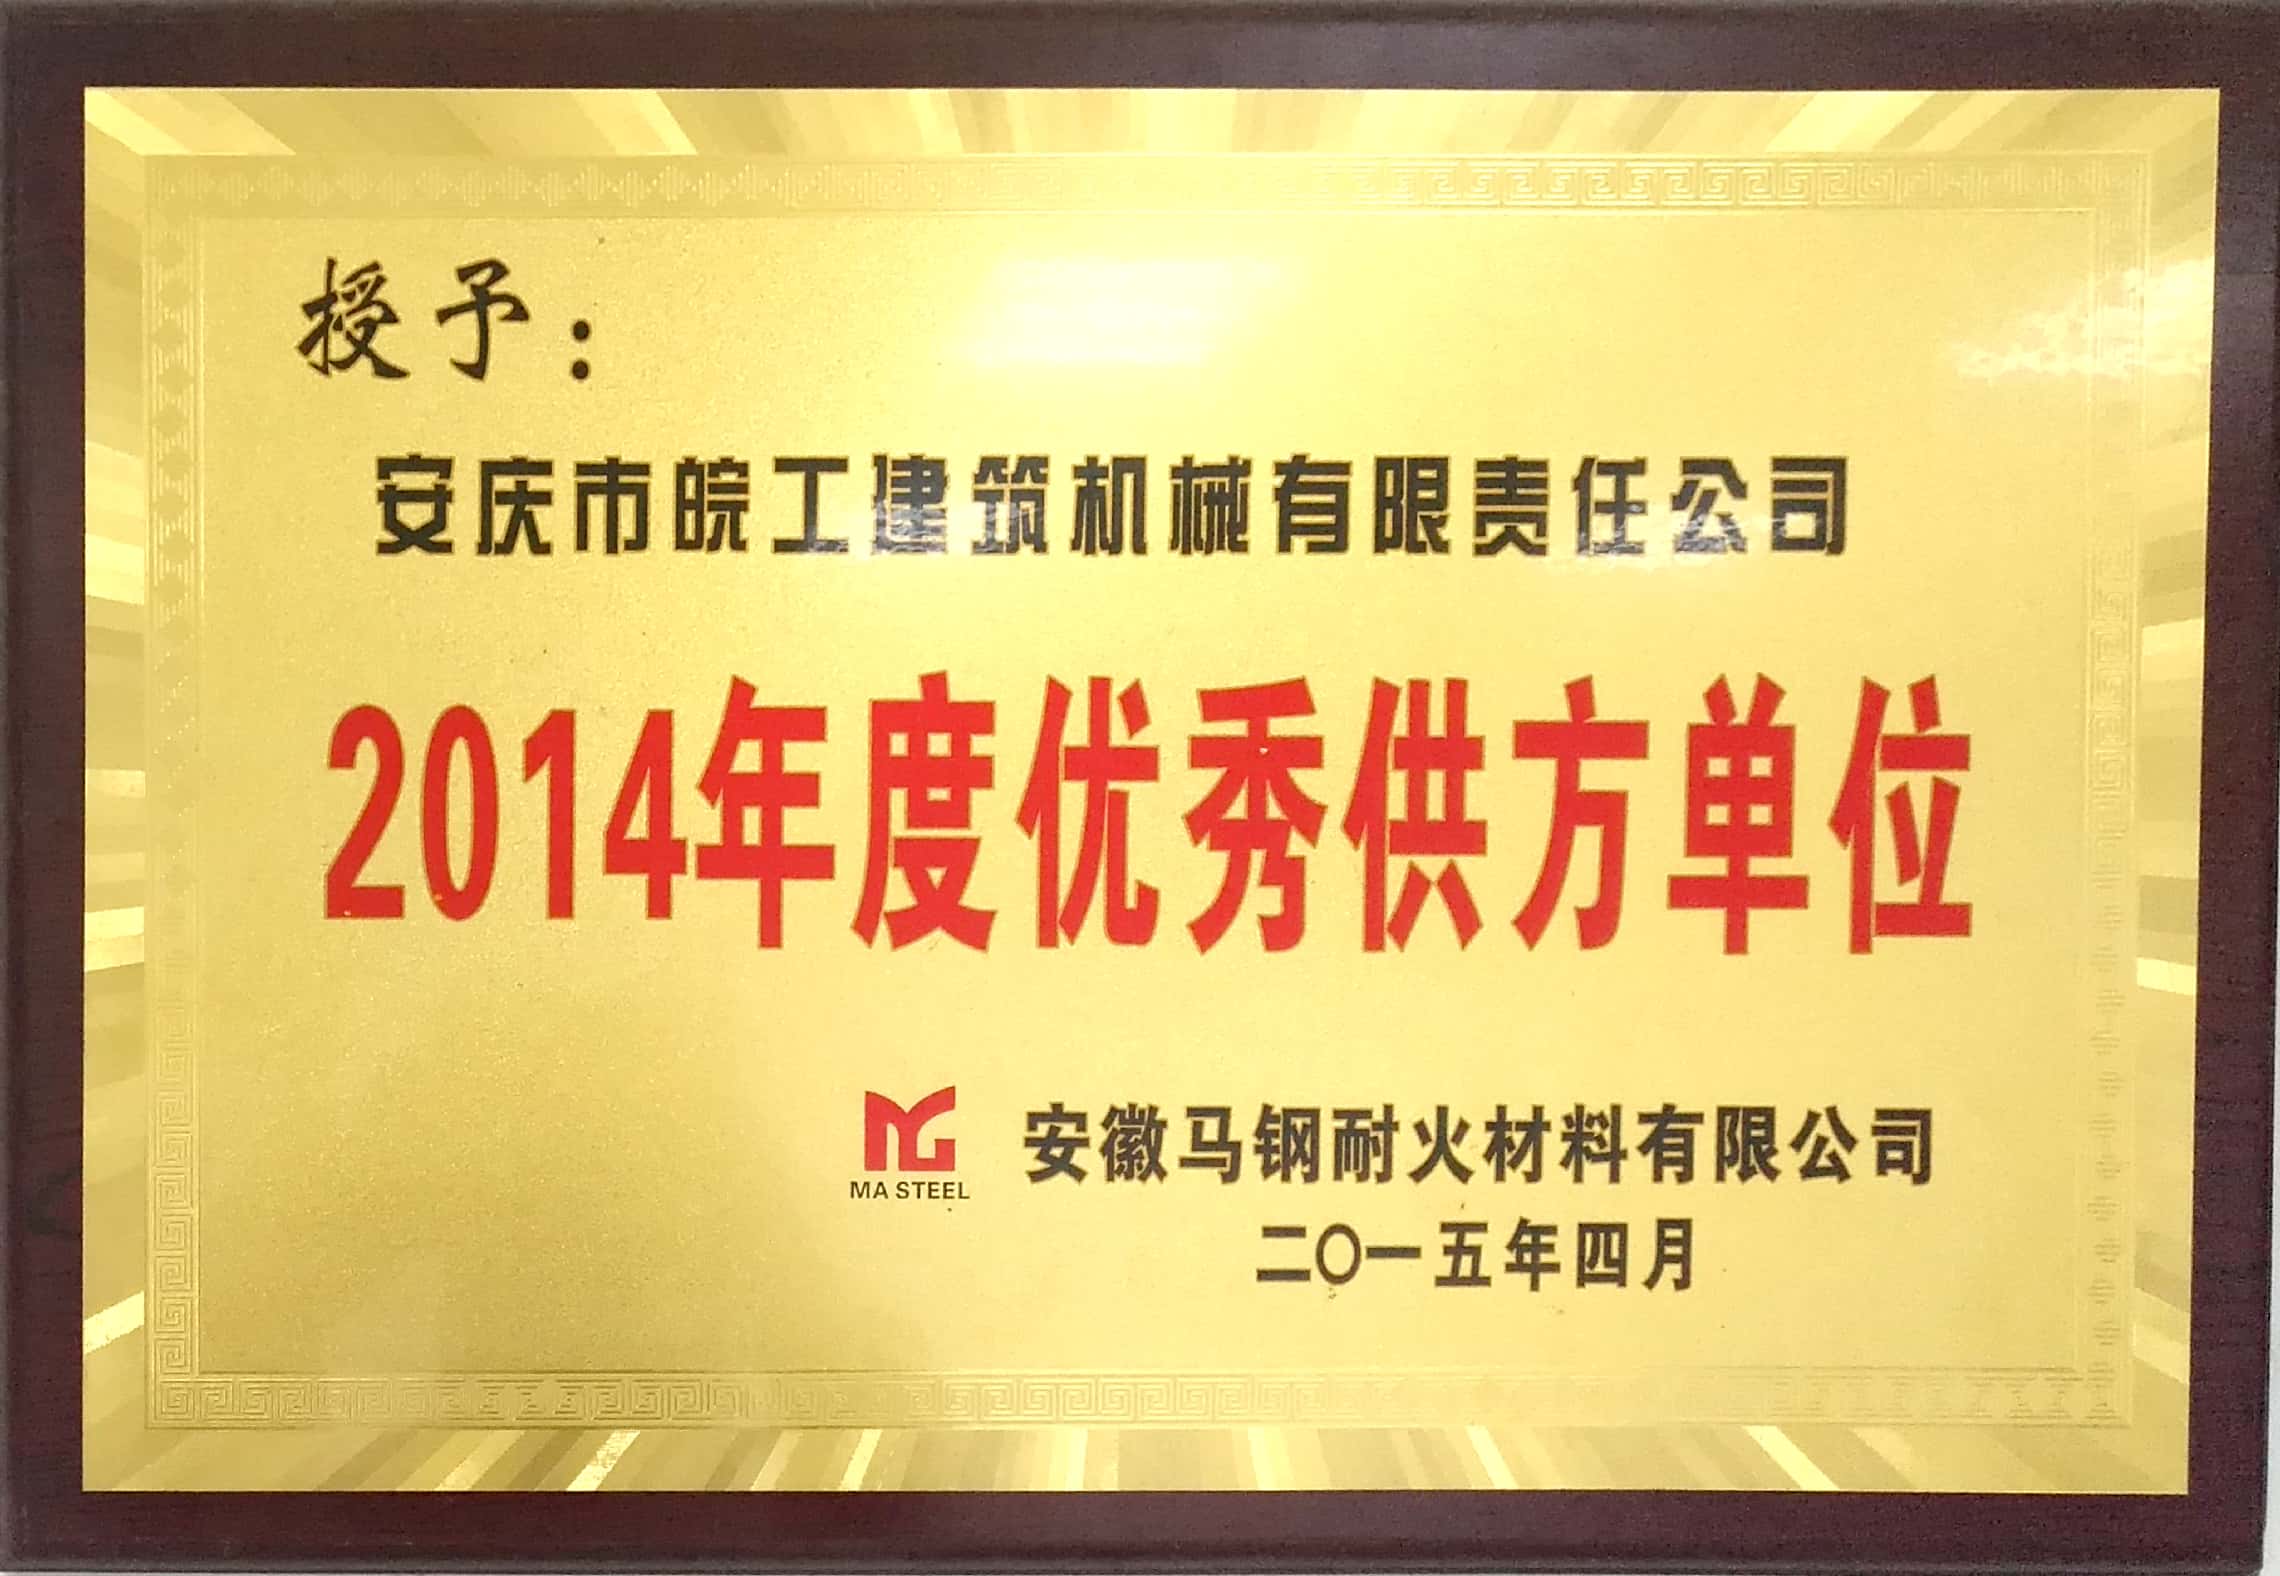 安徽马钢耐火材料授予2014年度优秀供方单位